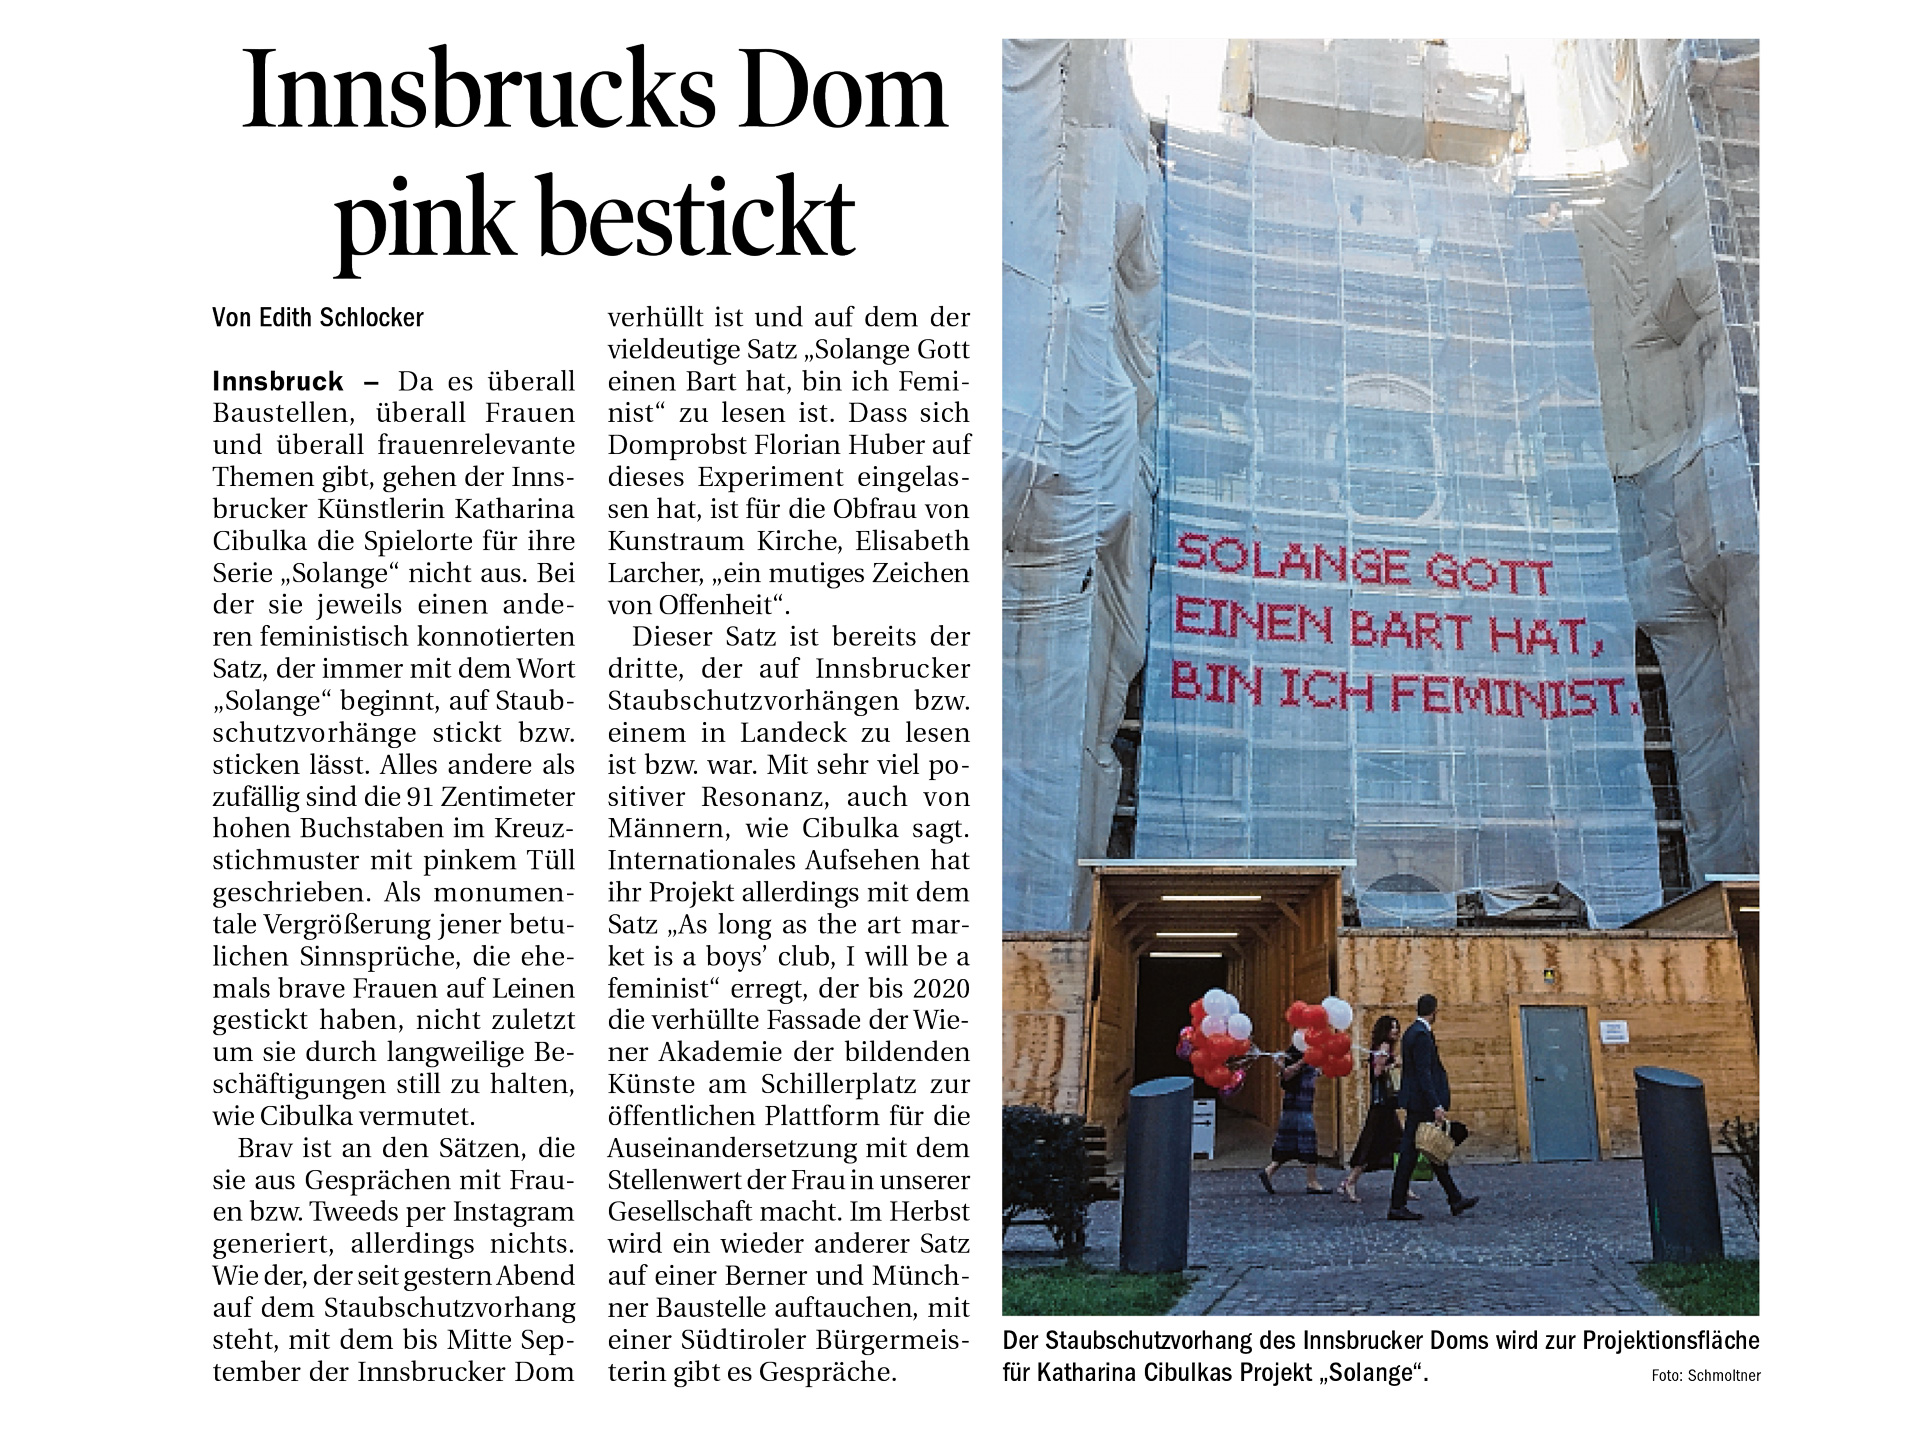 Tiroler Tageszeitung – Innsbrucks Dom pink bestickt – 28/07/18